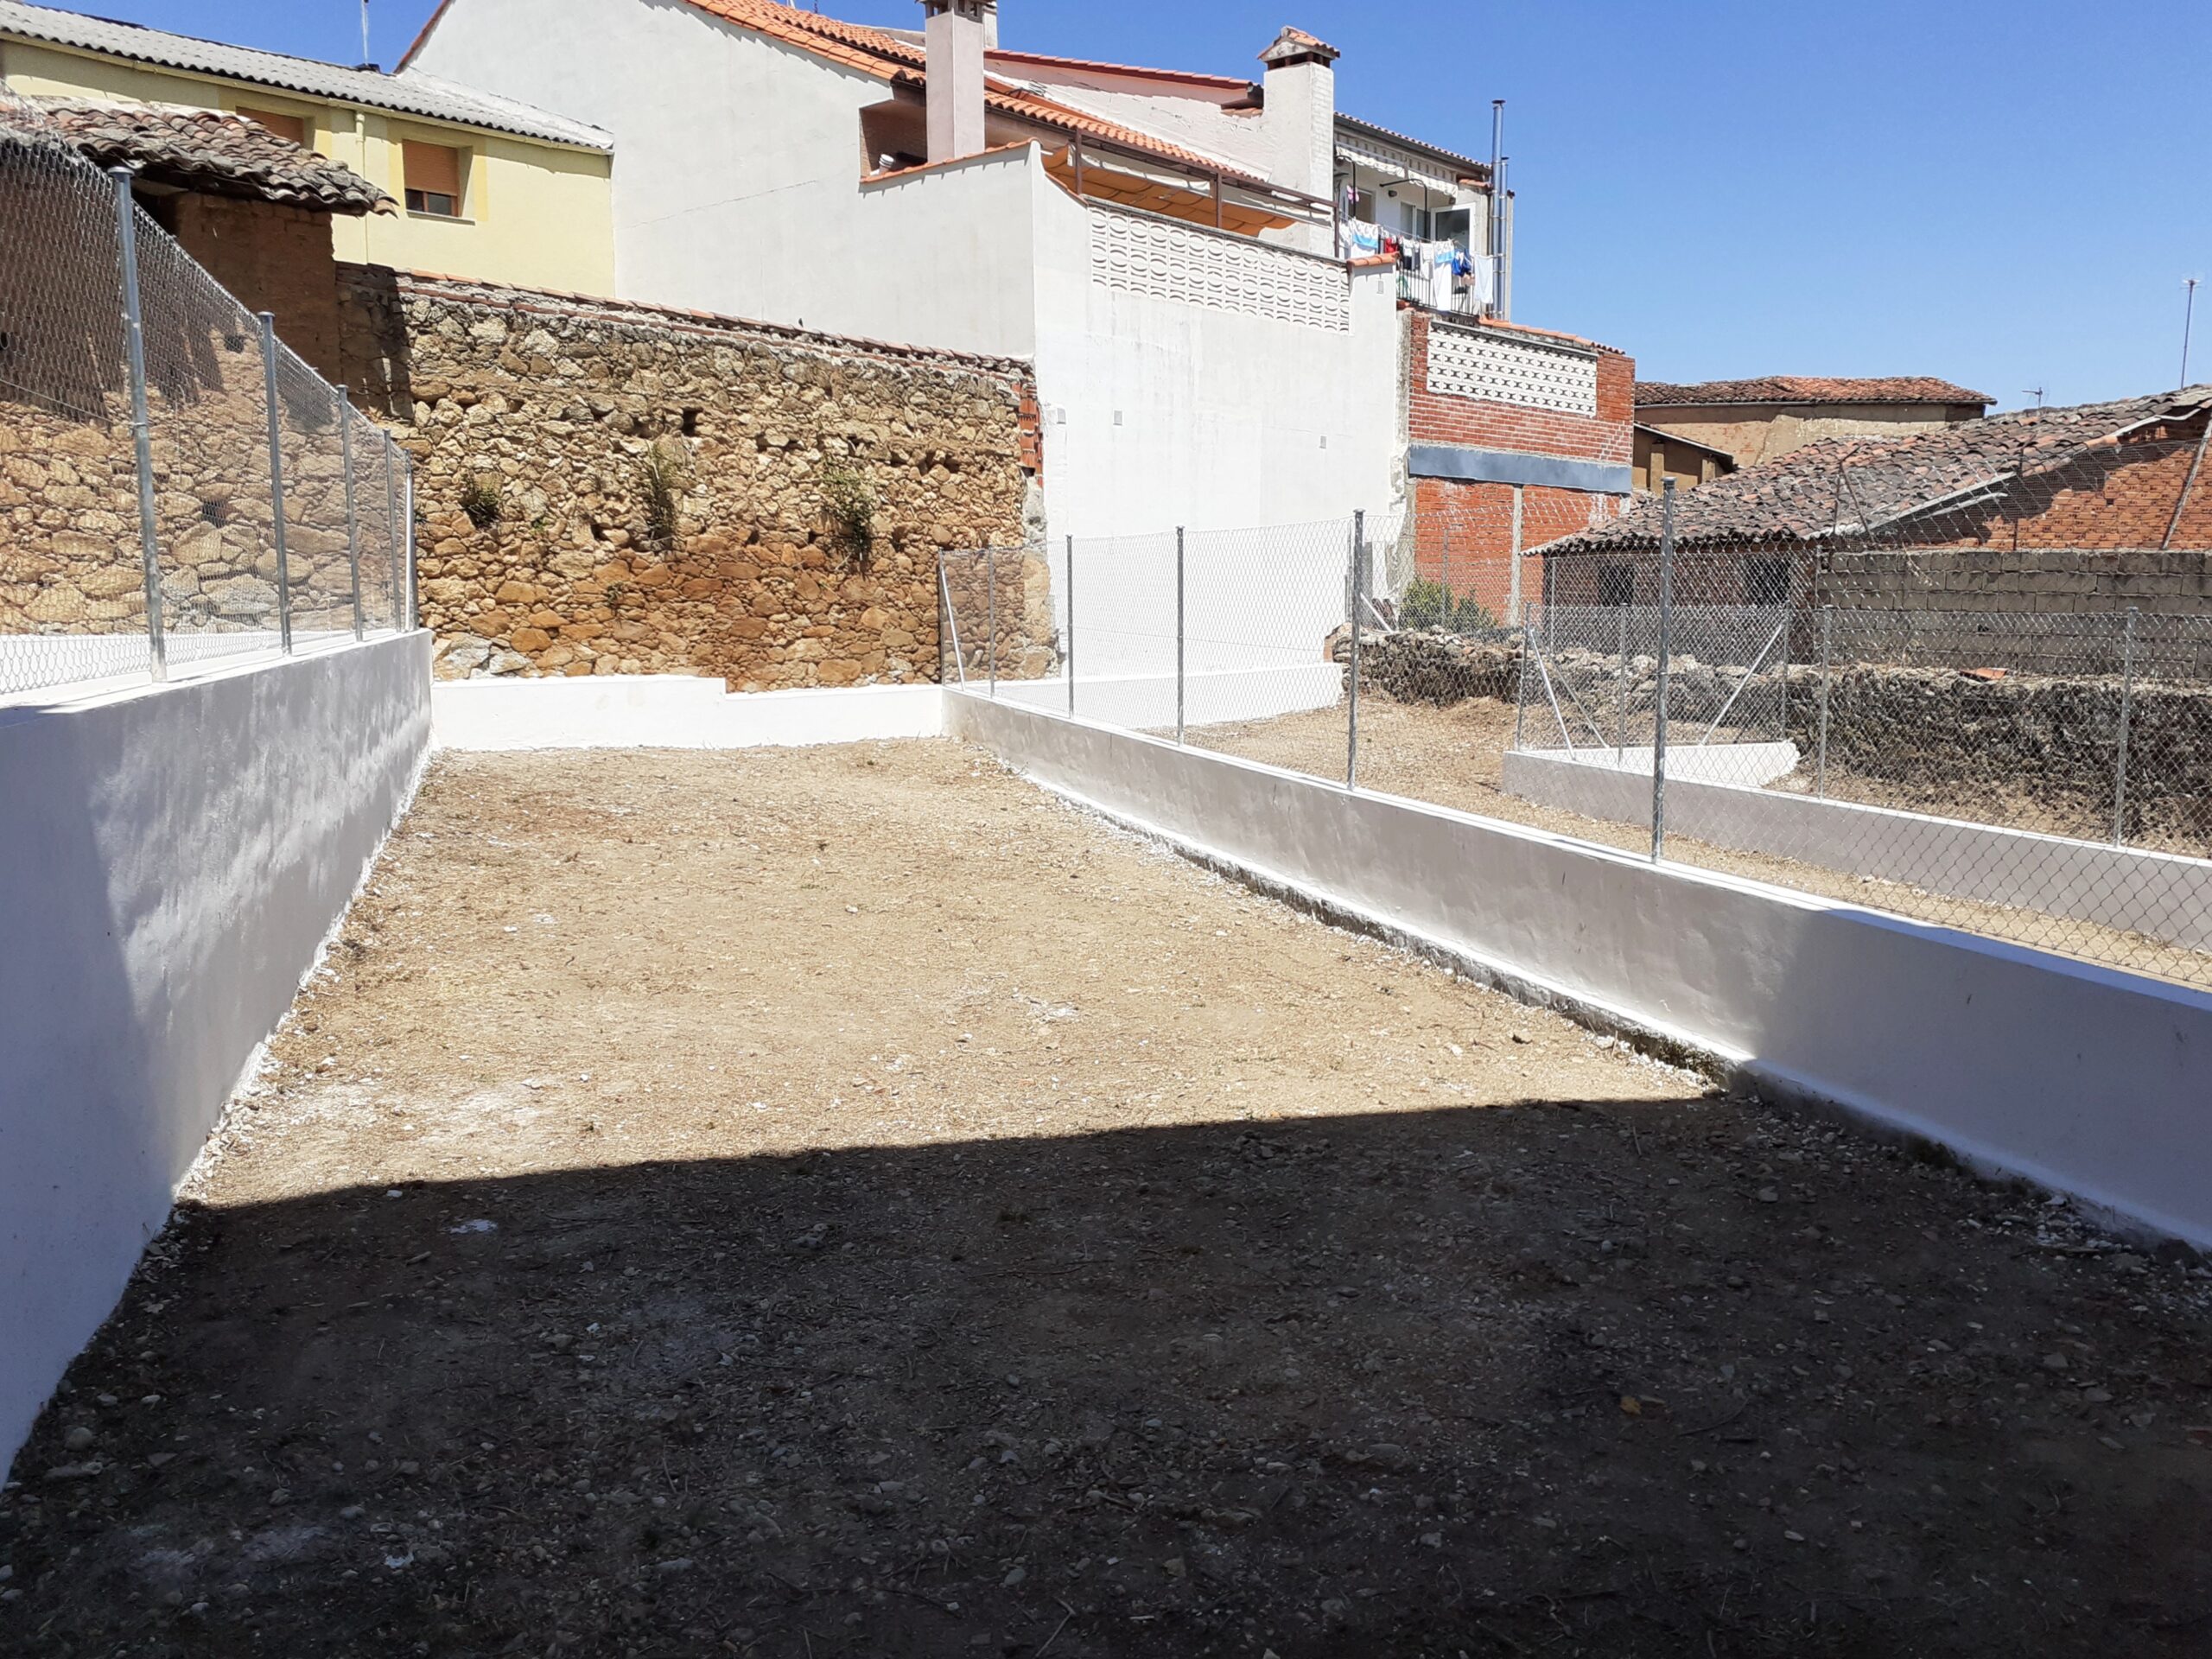 Adecuación viviendas en Cáceres, Jaraiz de la Vera